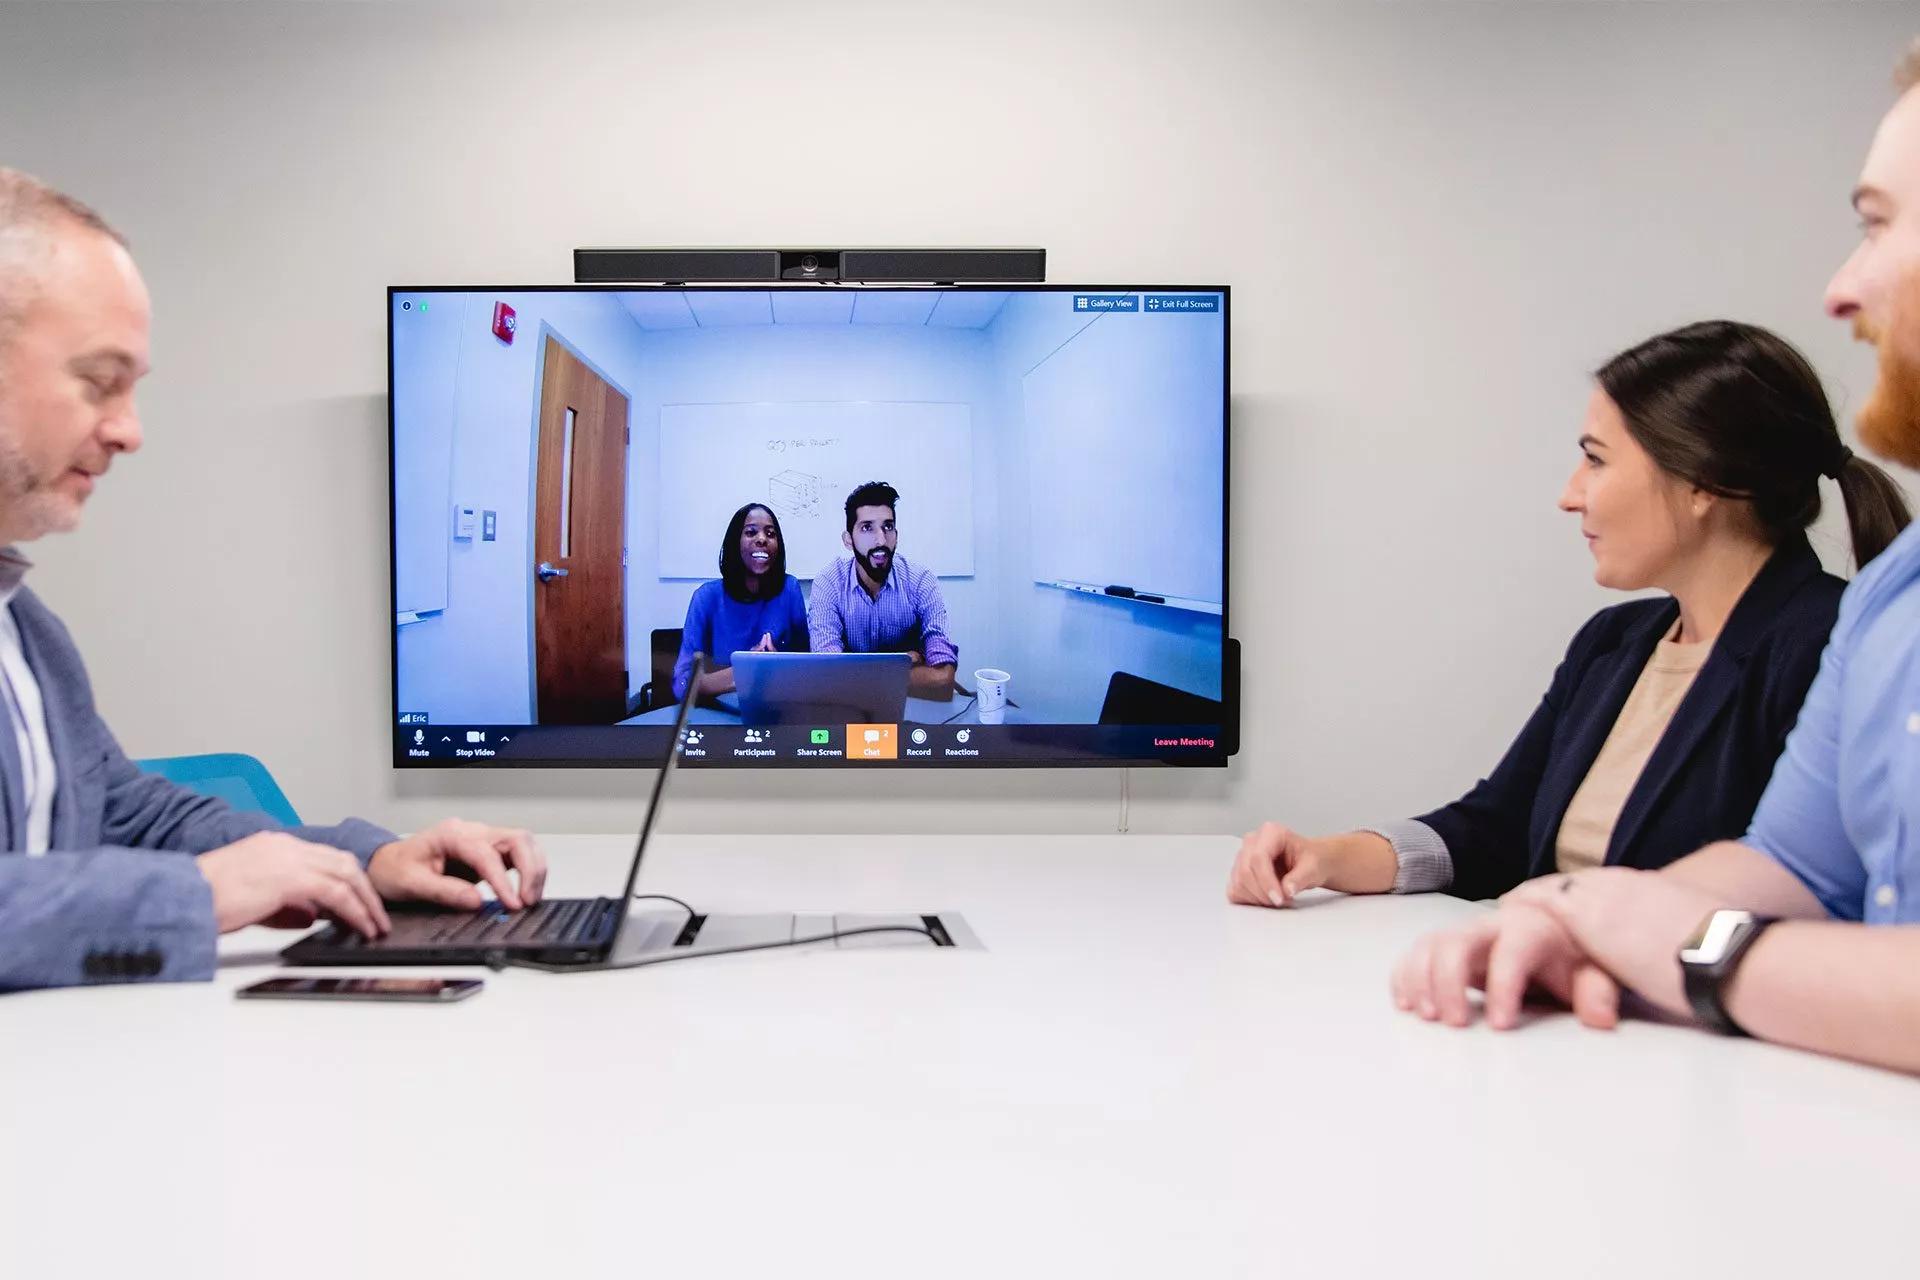 Eine Gruppe von Mitarbeitern nimmt an einer Videokonferenz teil und sieht einen Bildschirm